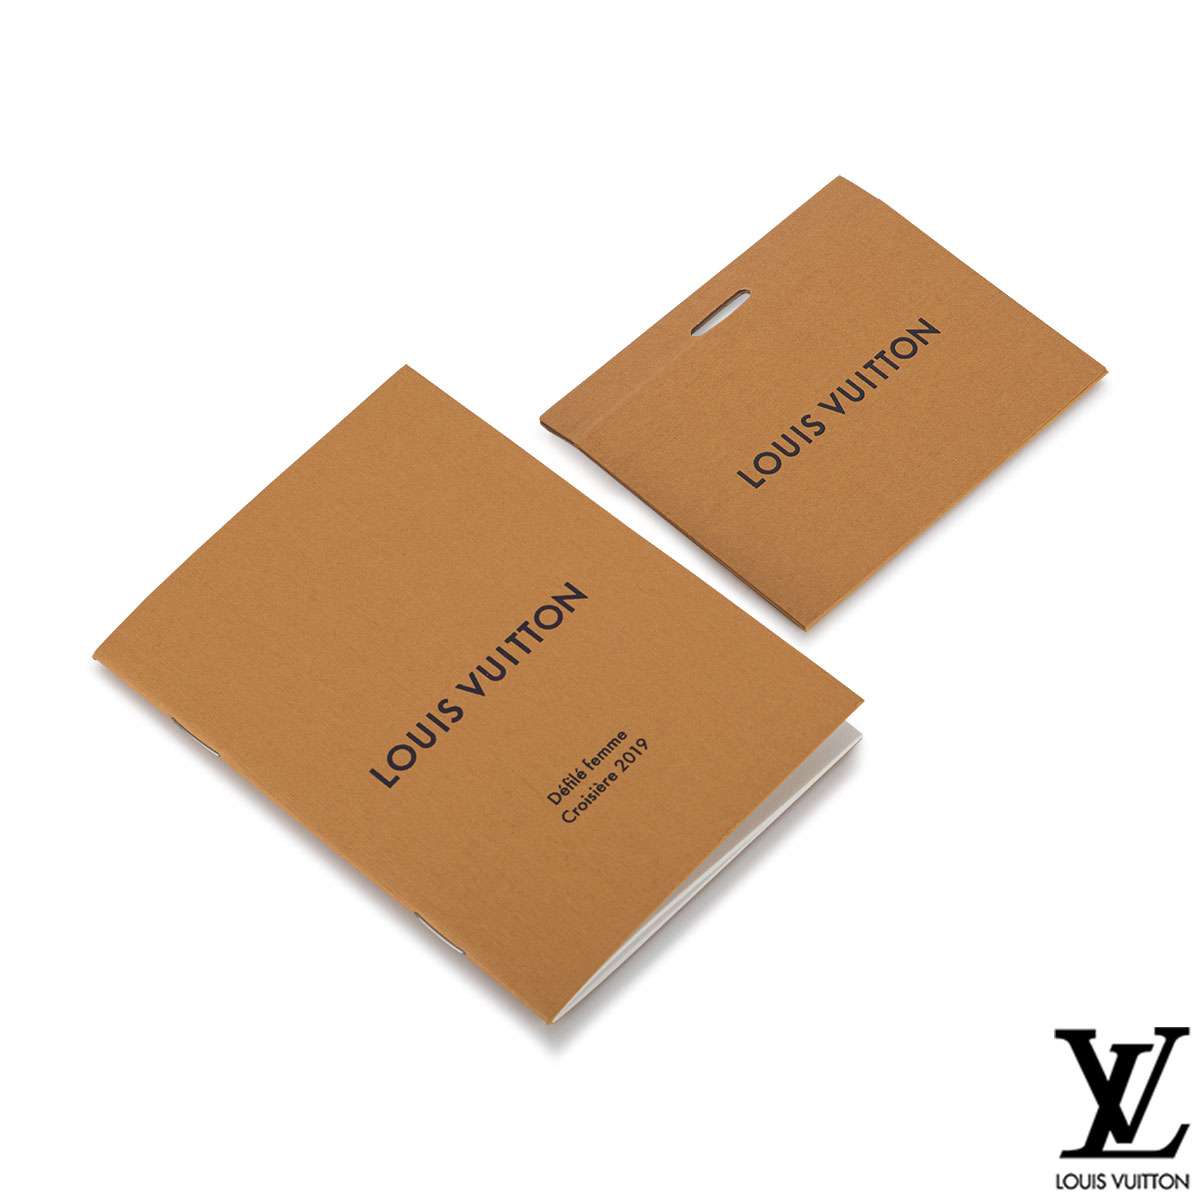 Louis Vuitton X Grace Coddington Catogram Neverfull MM Tote Bag | Rich Diamonds